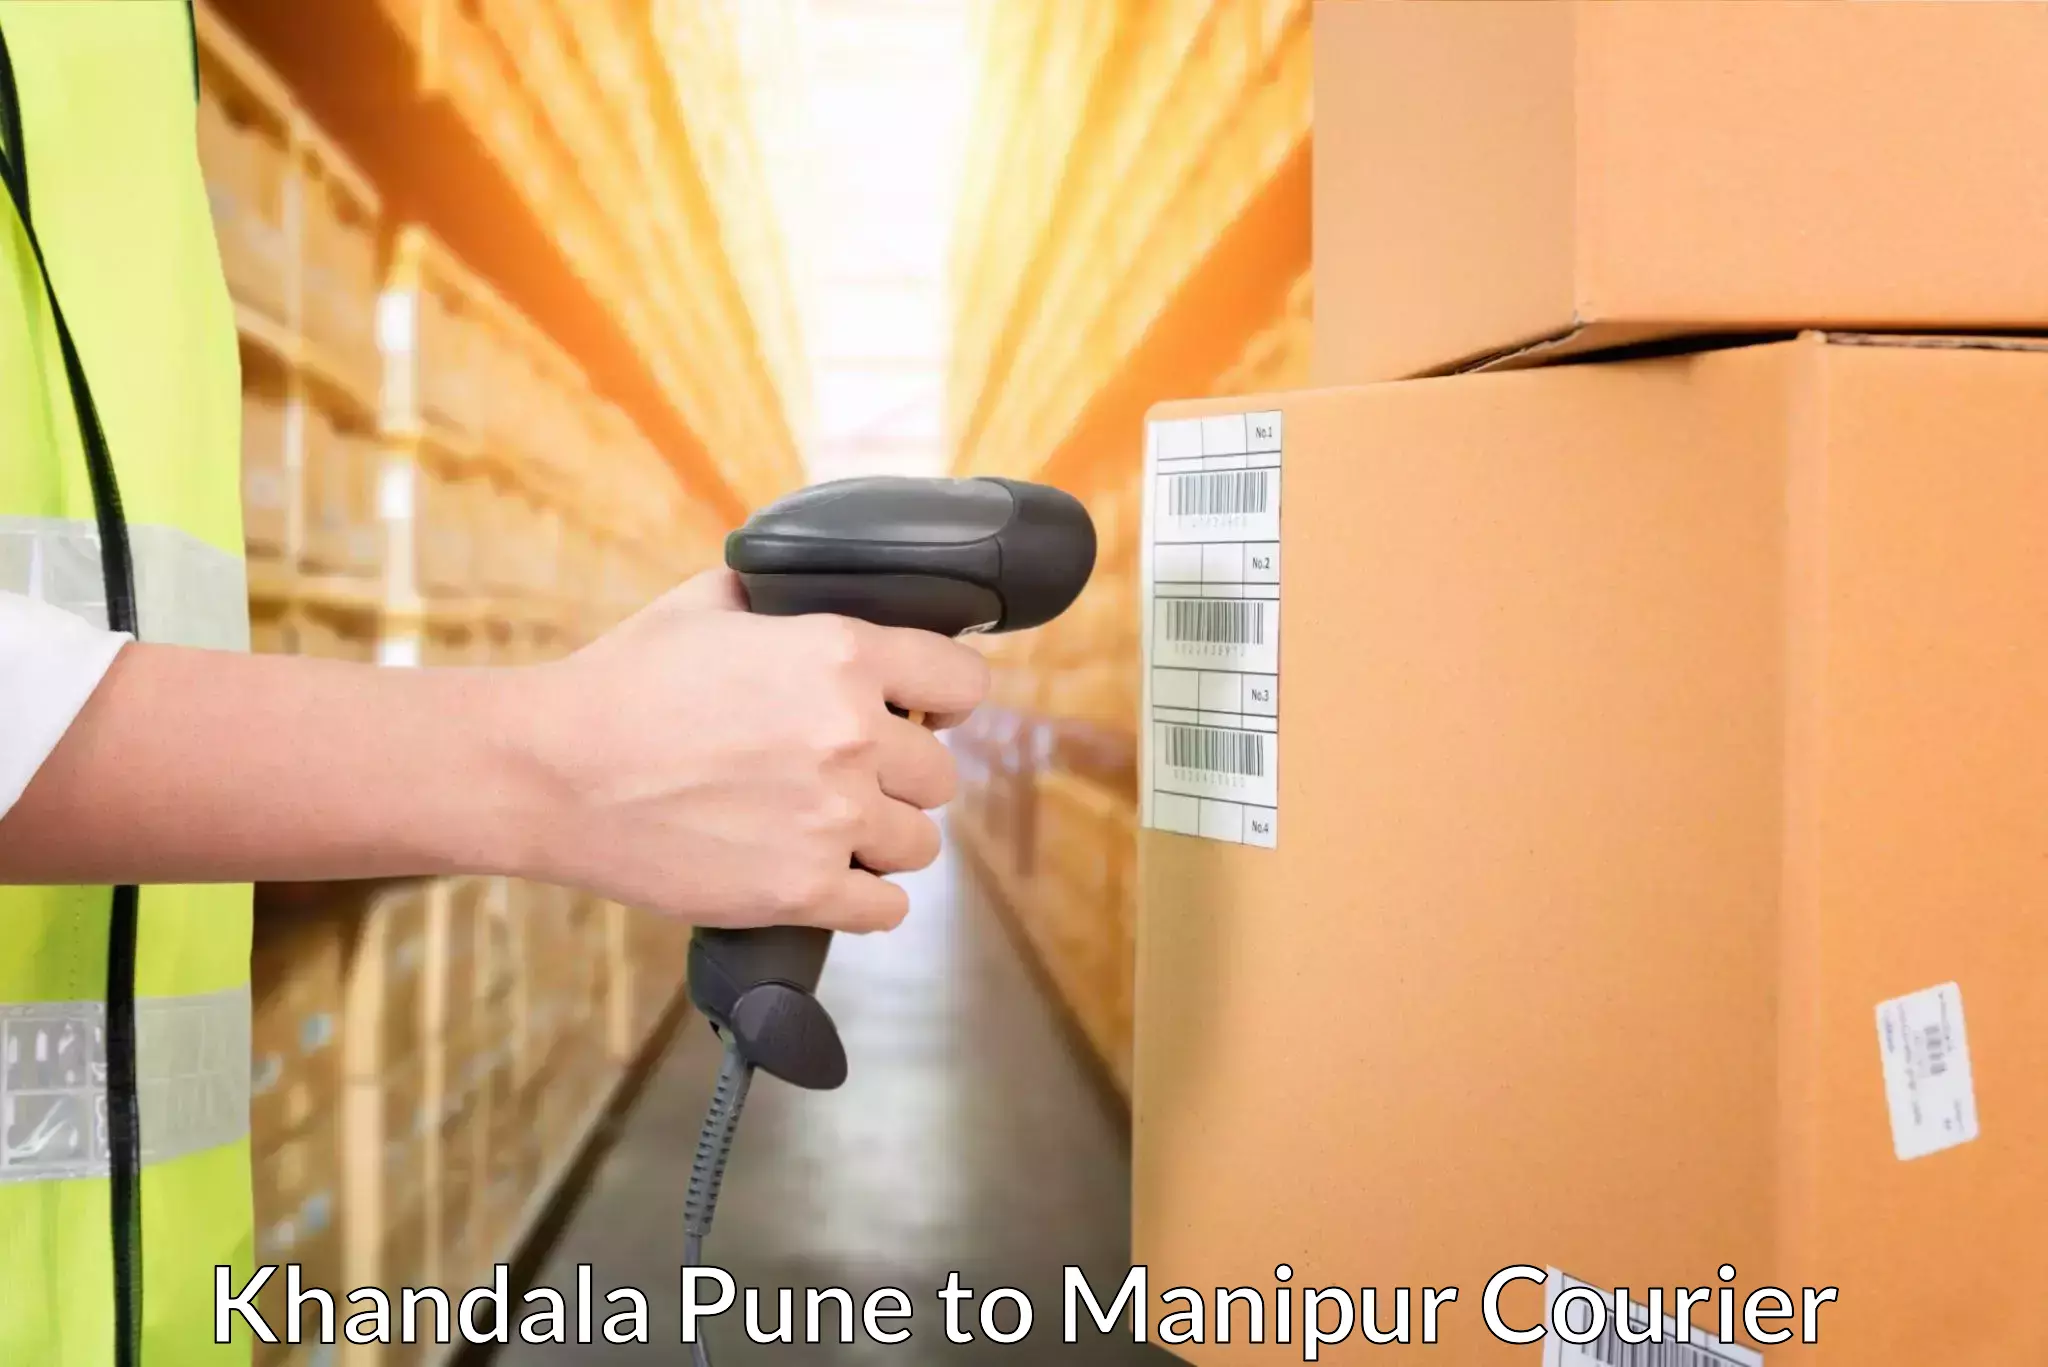 Efficient freight service Khandala Pune to Ukhrul